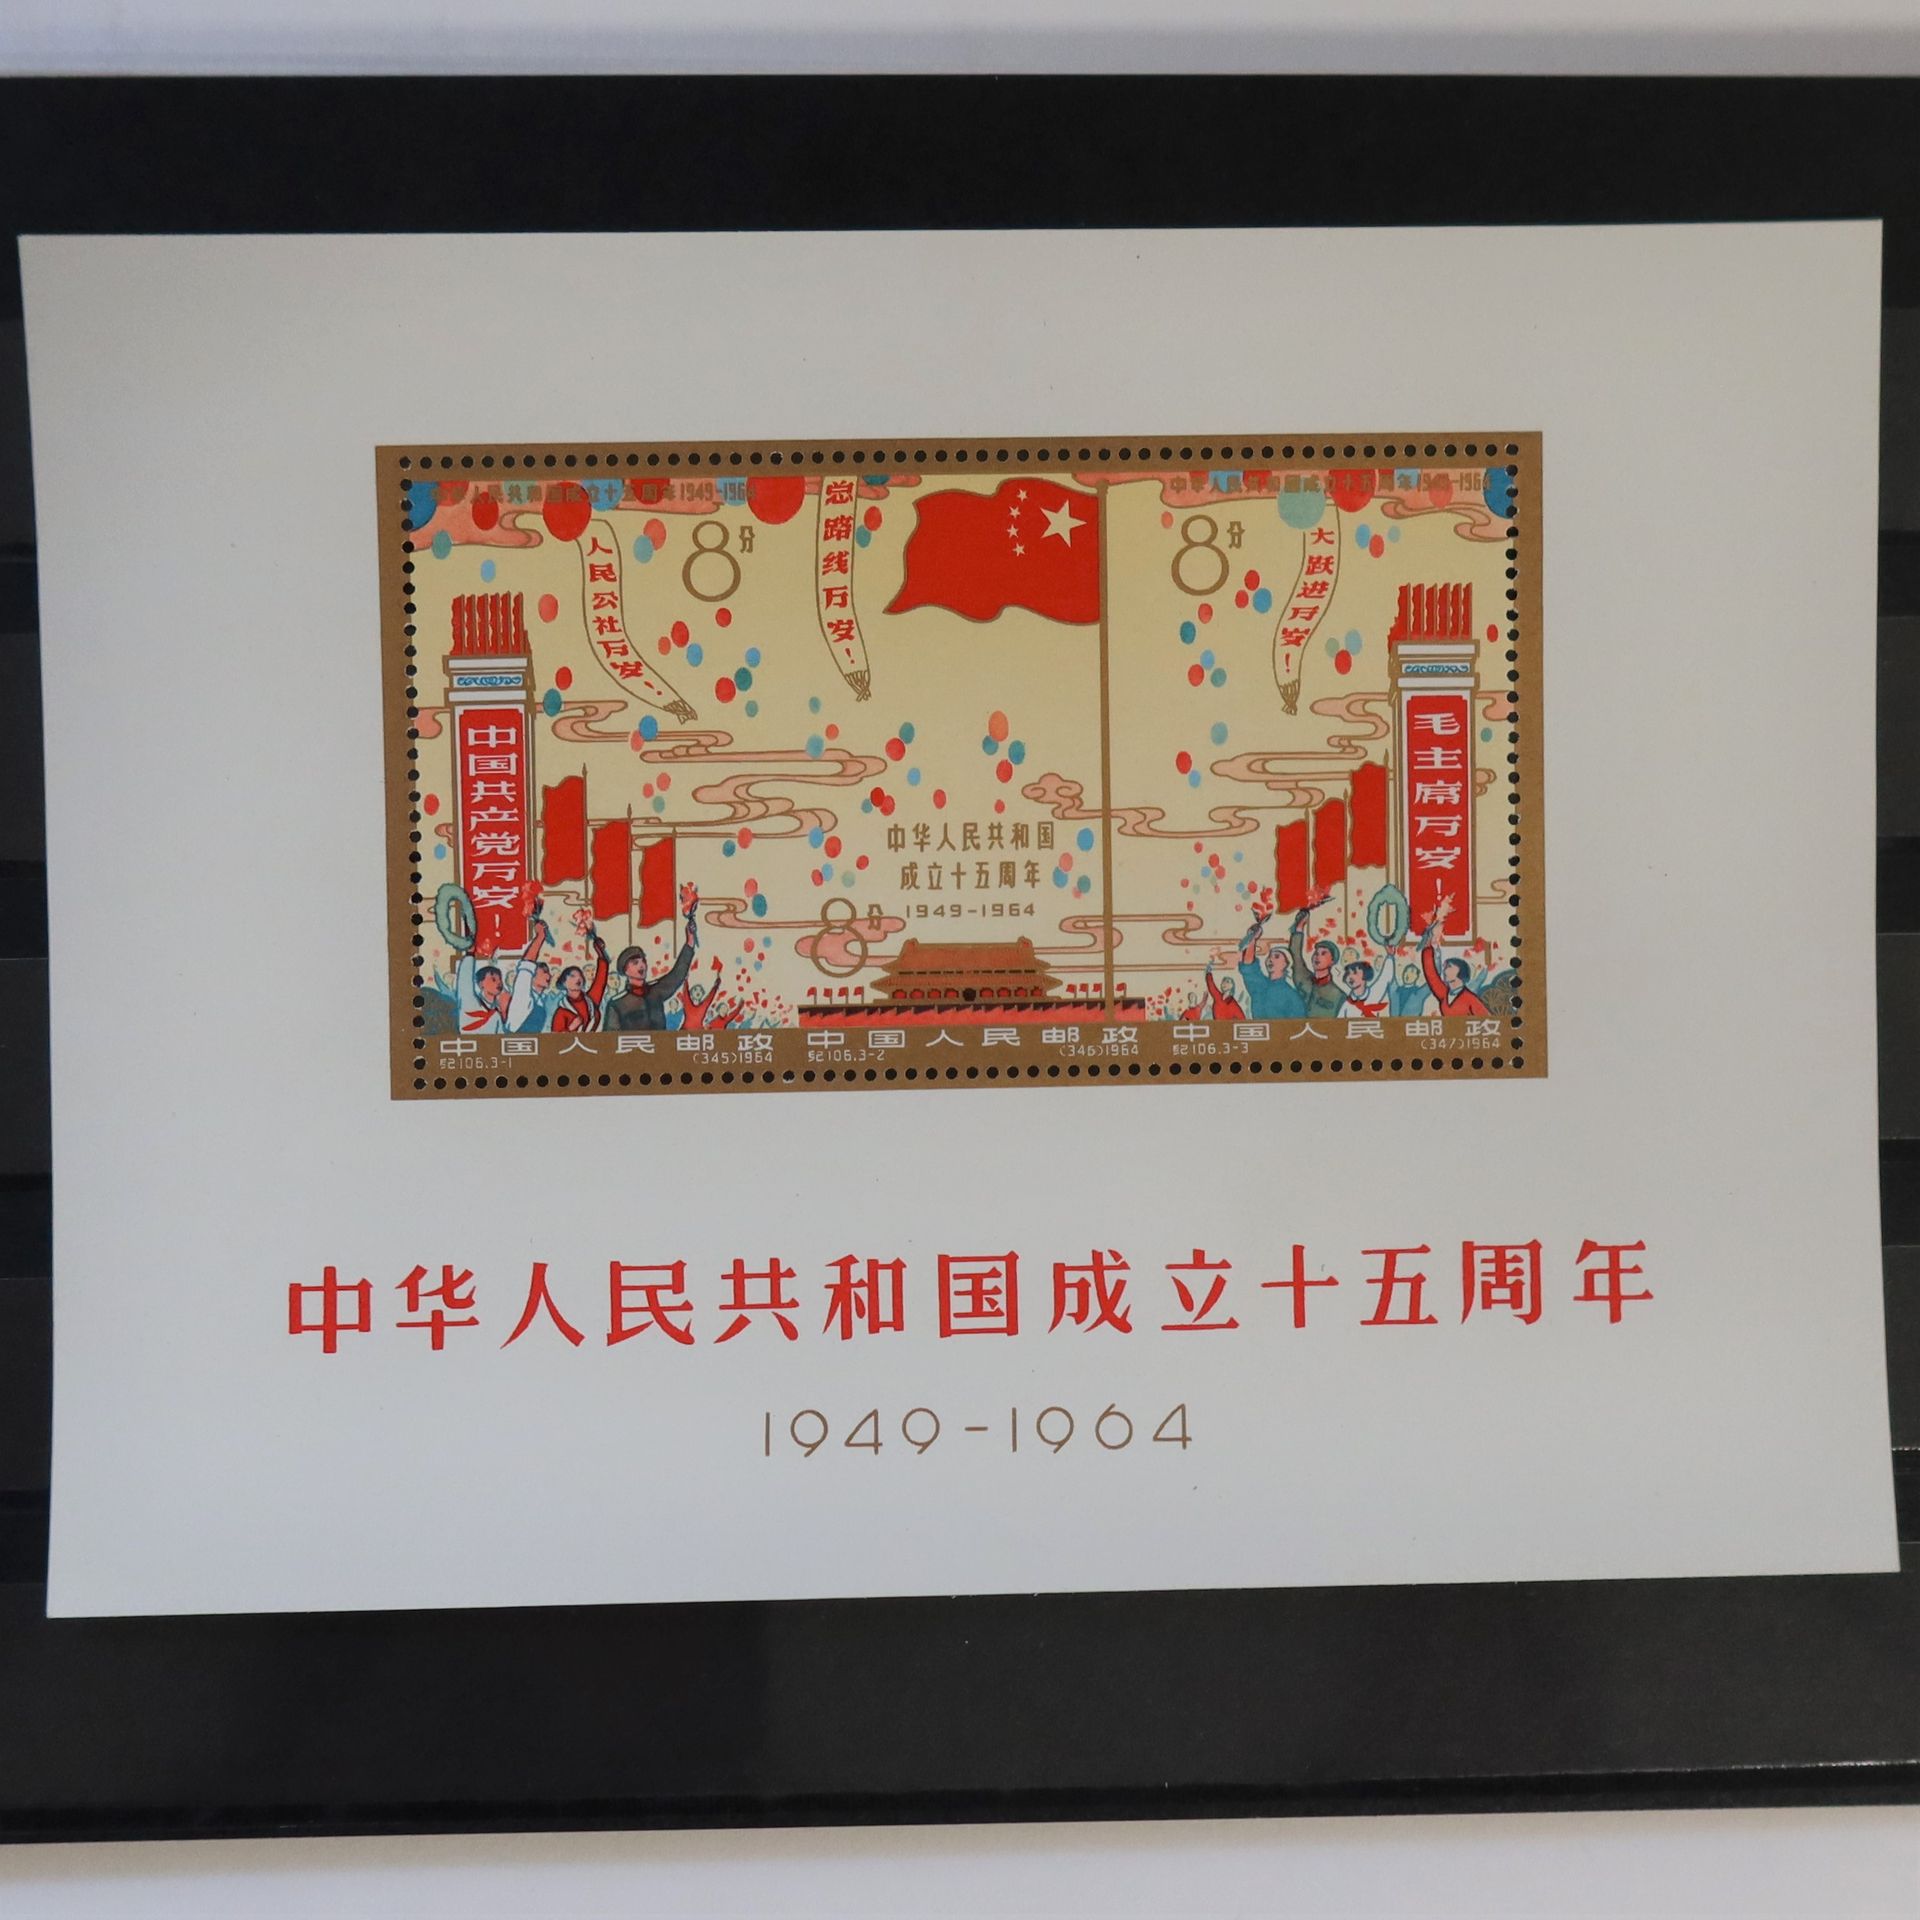 Null [CHINA]
Superblock Nr. 13 "15. Jahrestag der Republik", neu, Luxus.